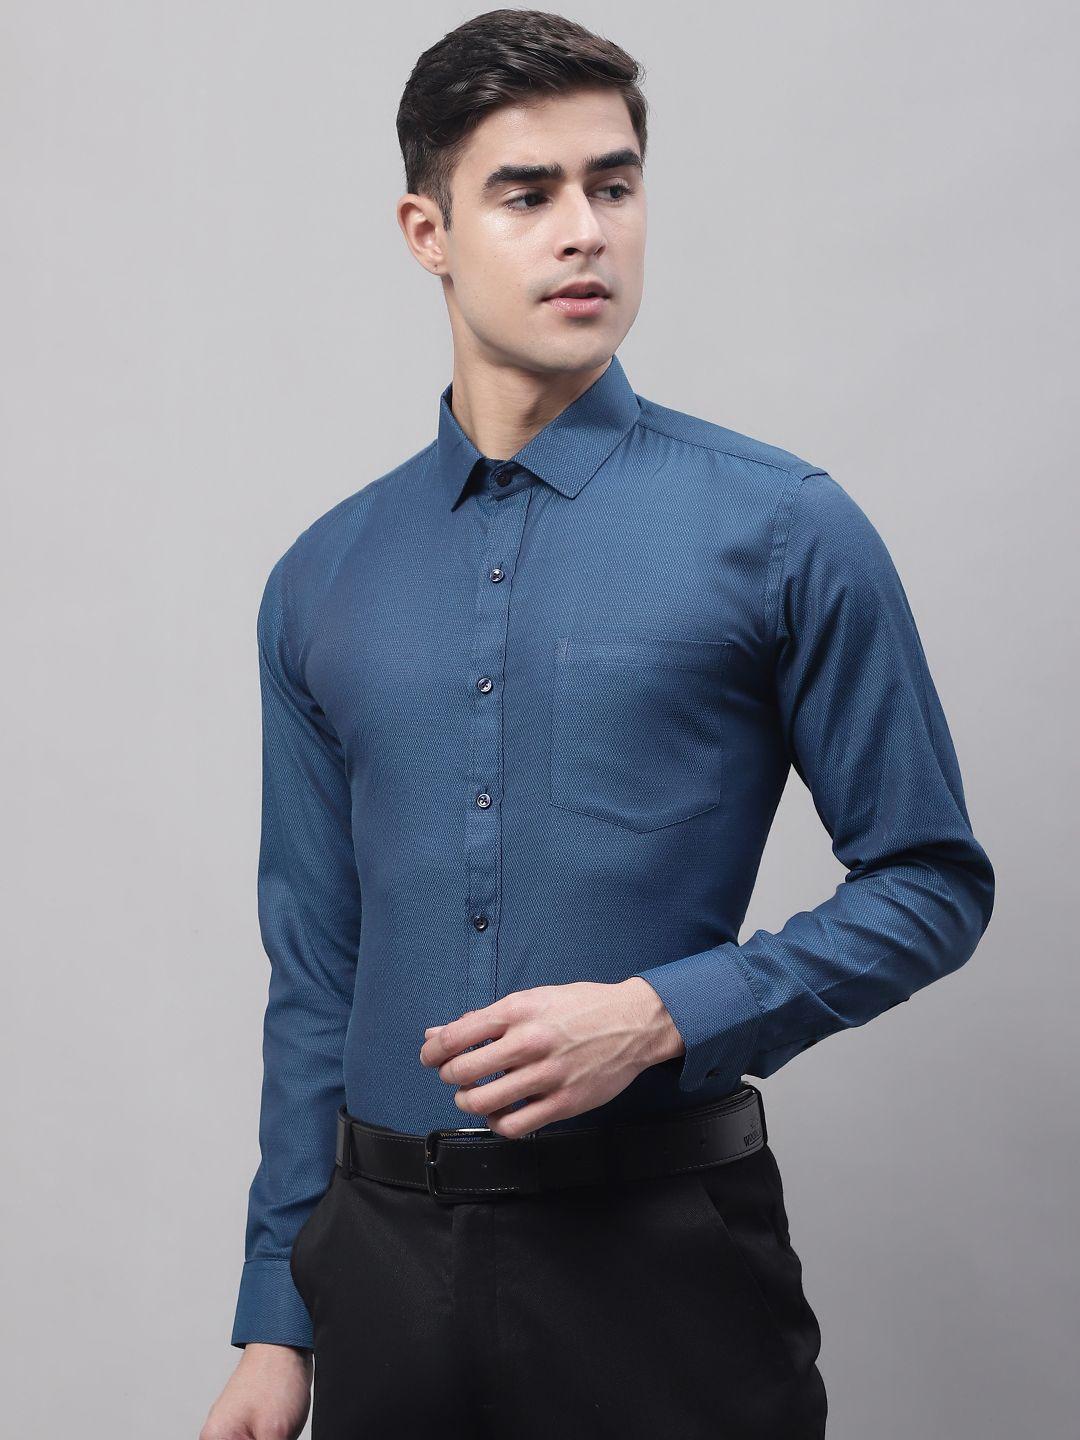 style quotient men formal shirt